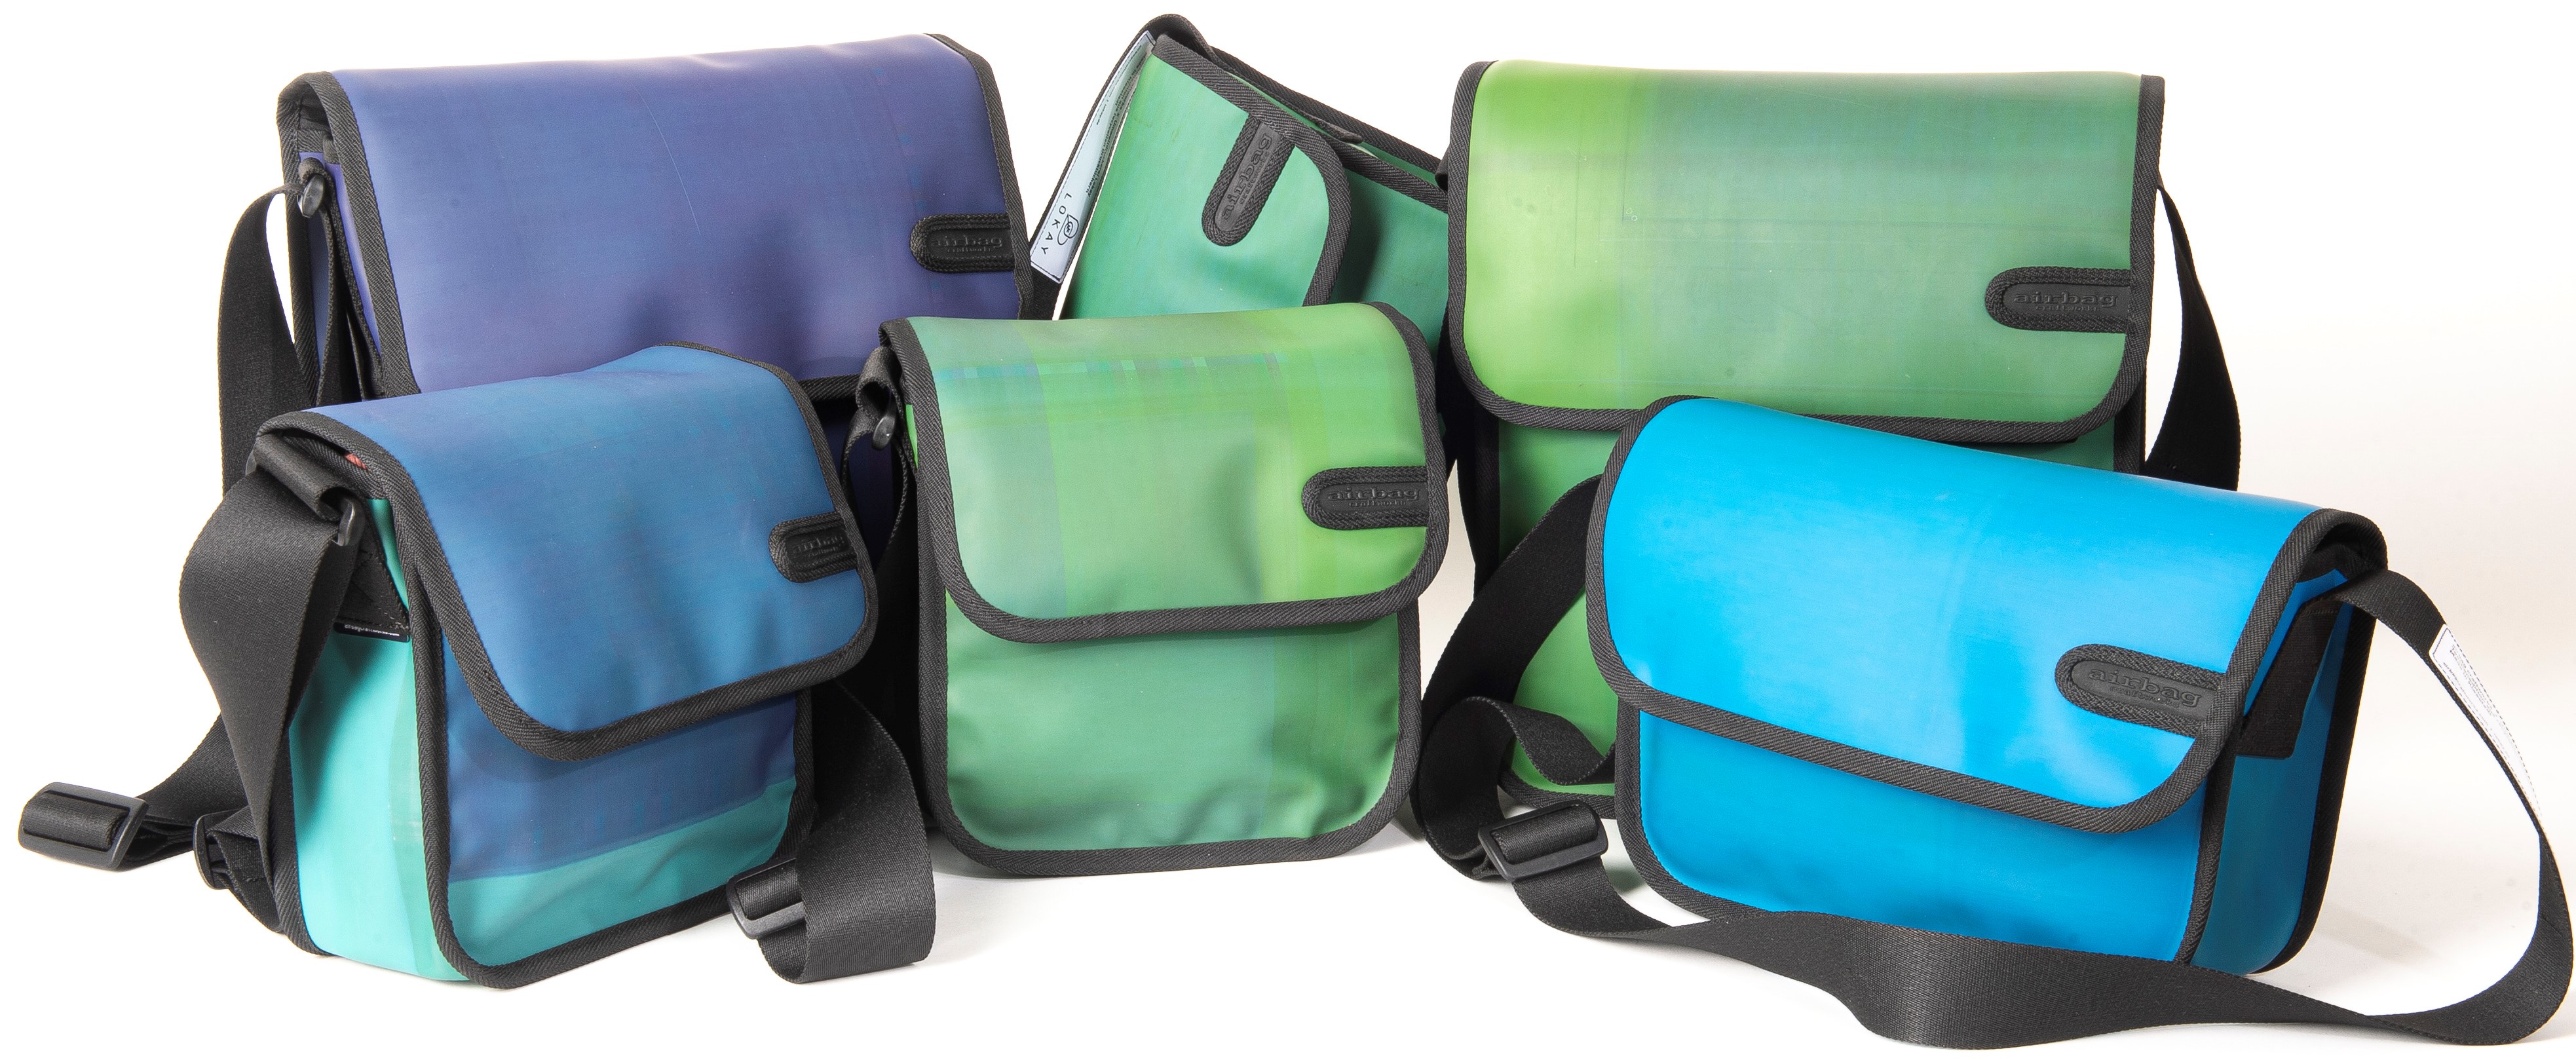 Messenger-Bags in verschiedenen Grün und Blau-Tönen mit schwarzen Schultergurten 